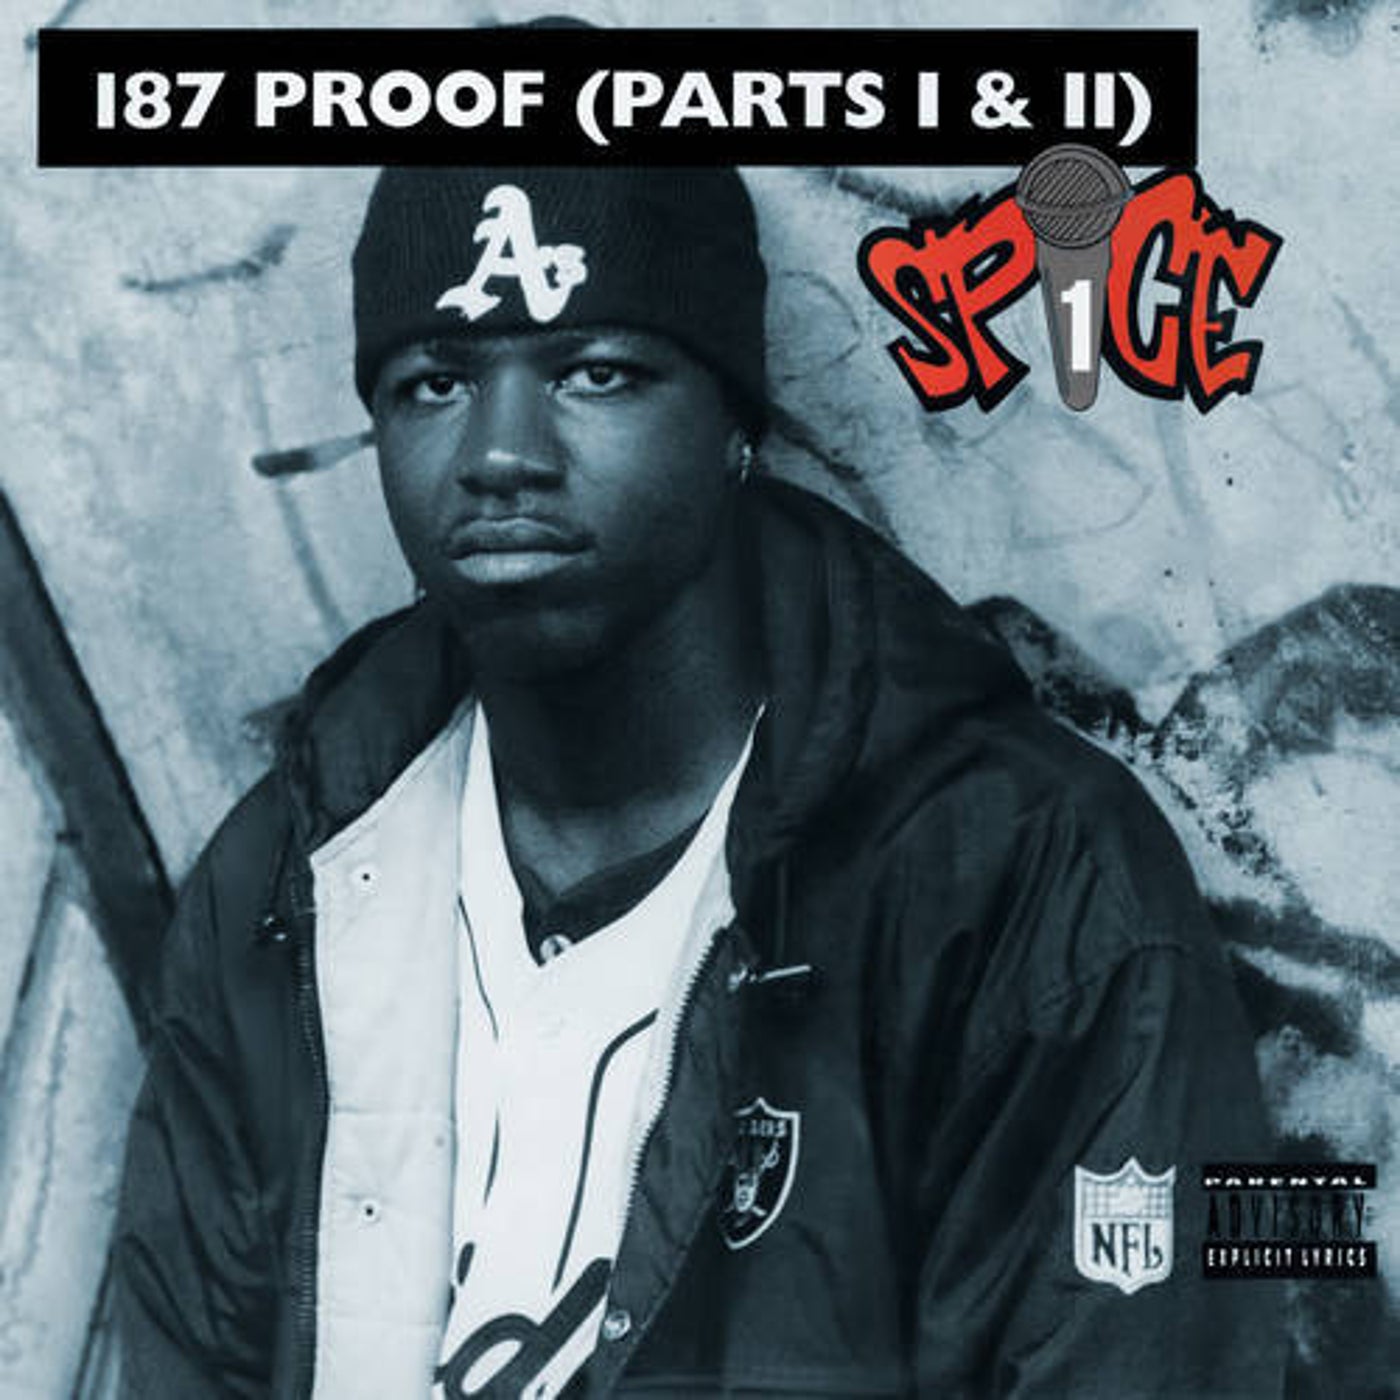 187 Proof (Parts I & II)